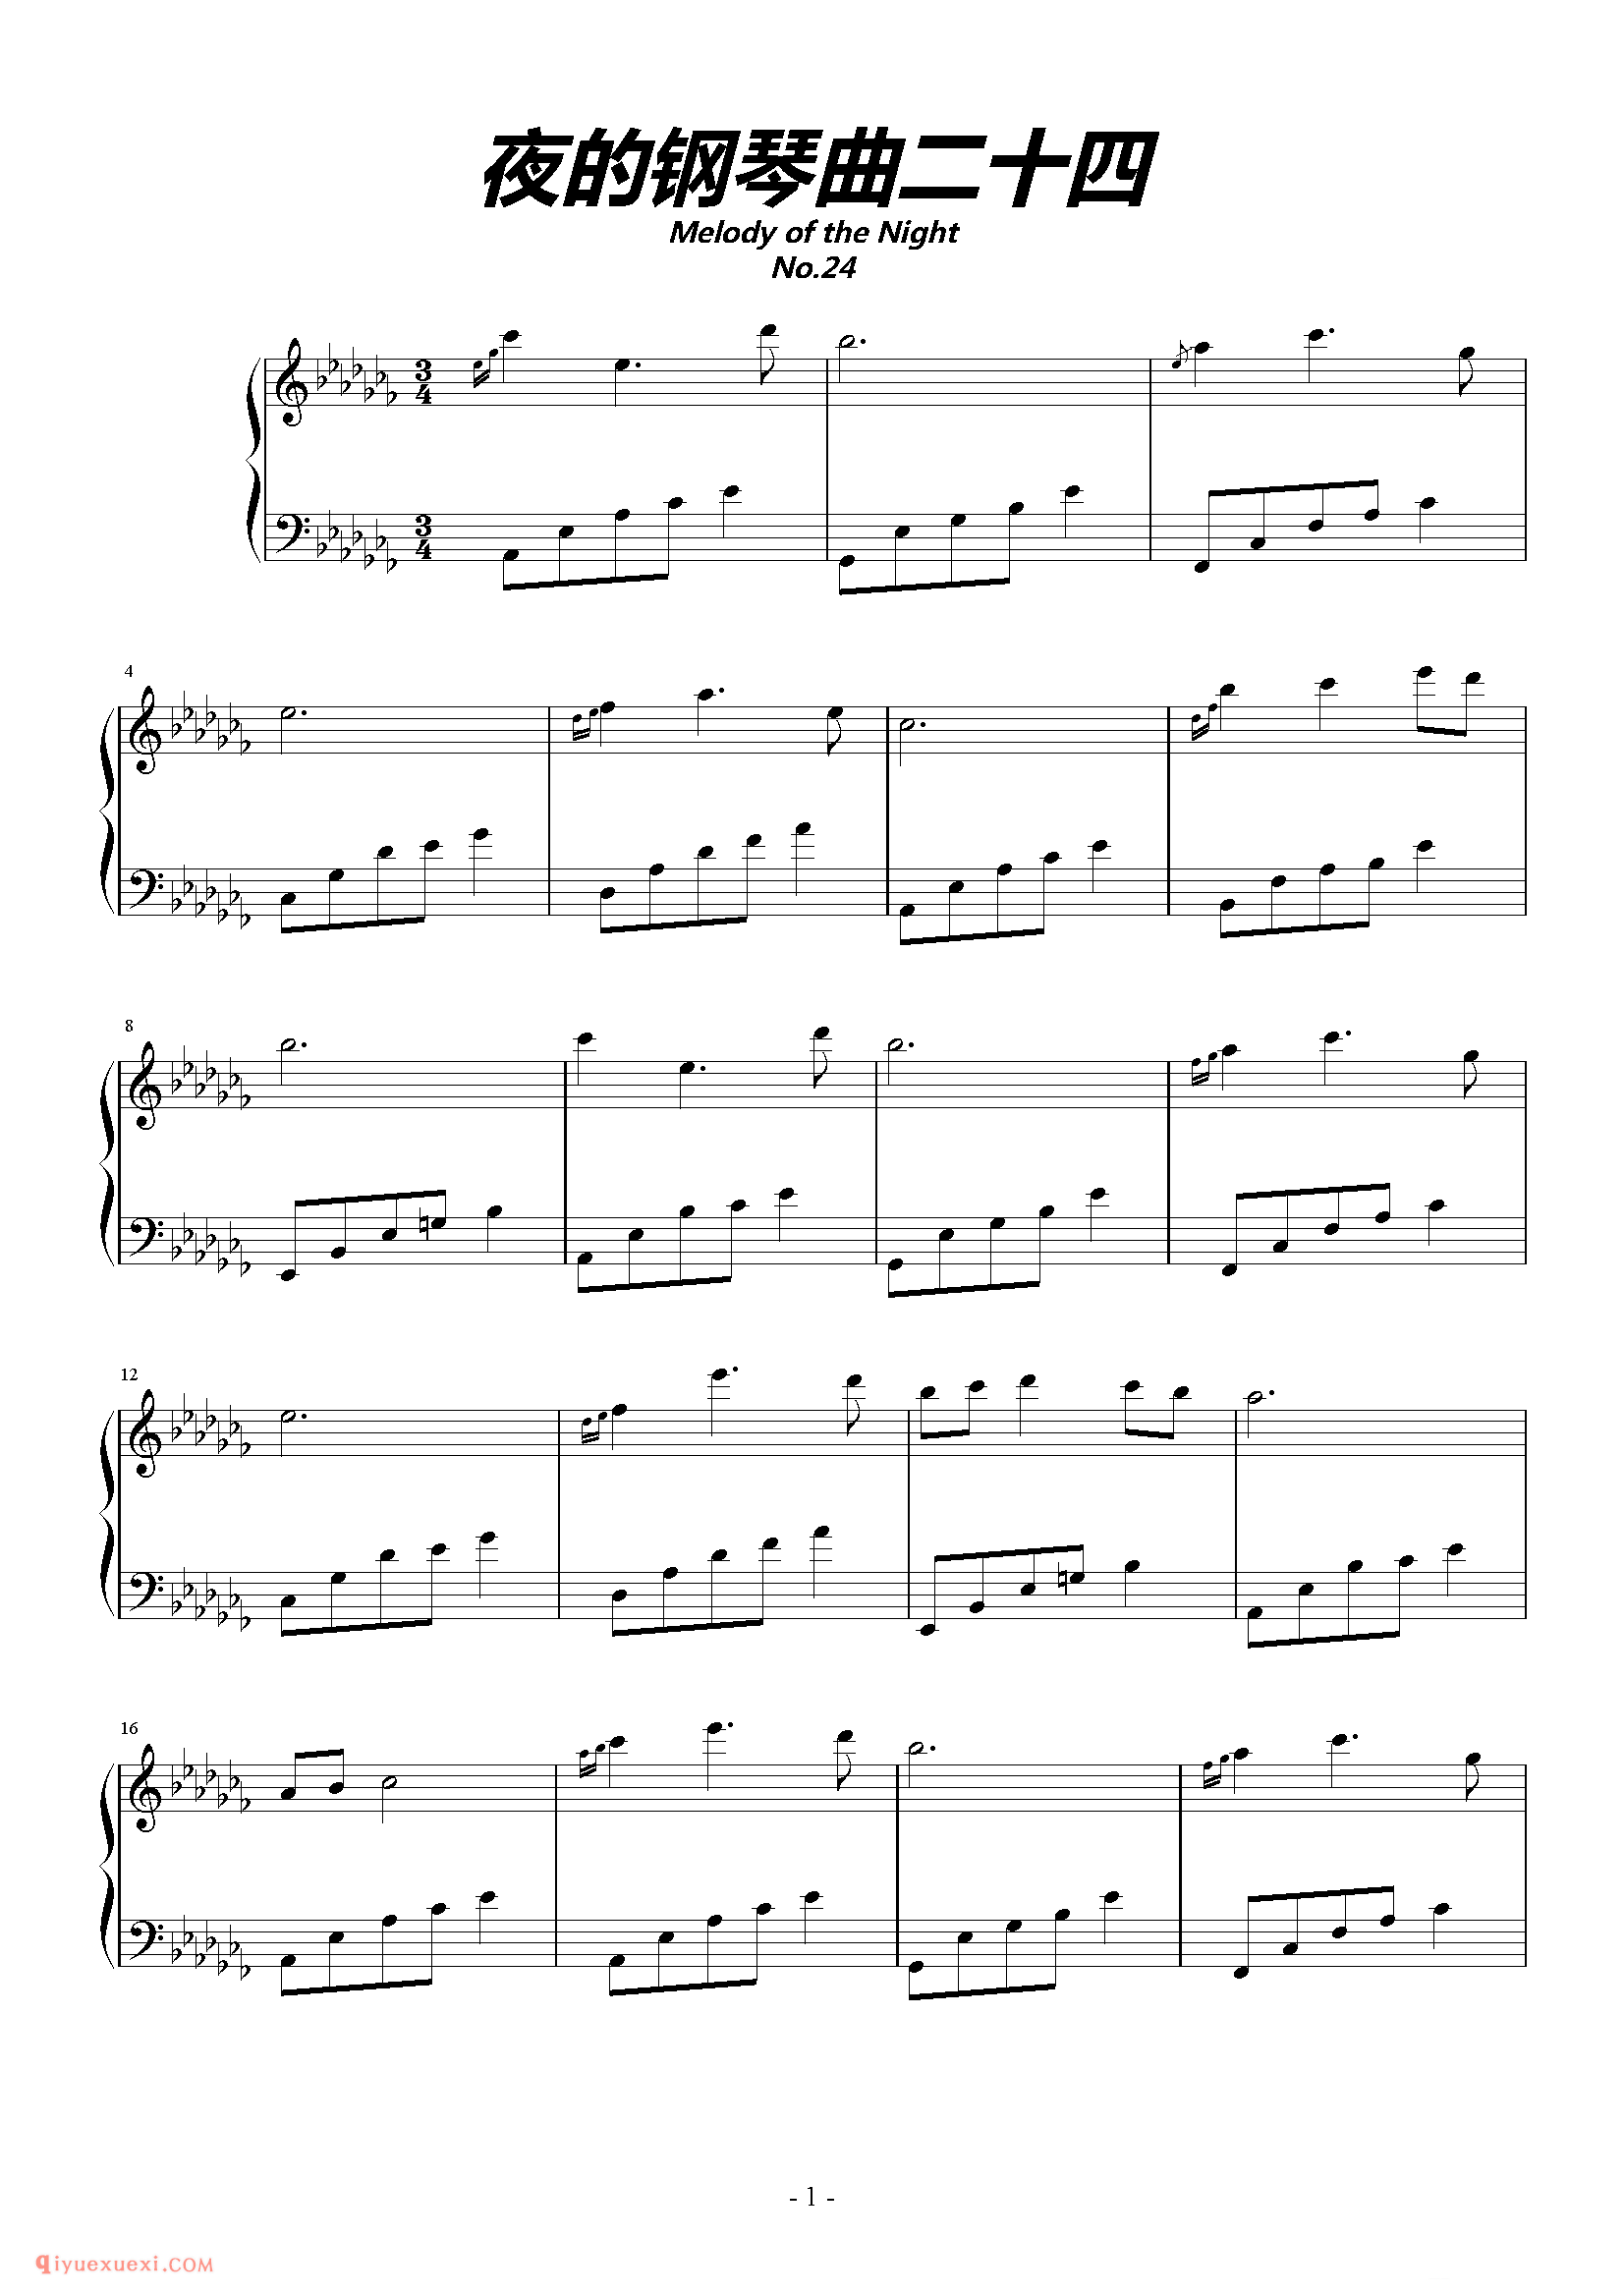 石进《夜的钢琴曲》第24首_石进夜的钢琴曲(24)五线谱